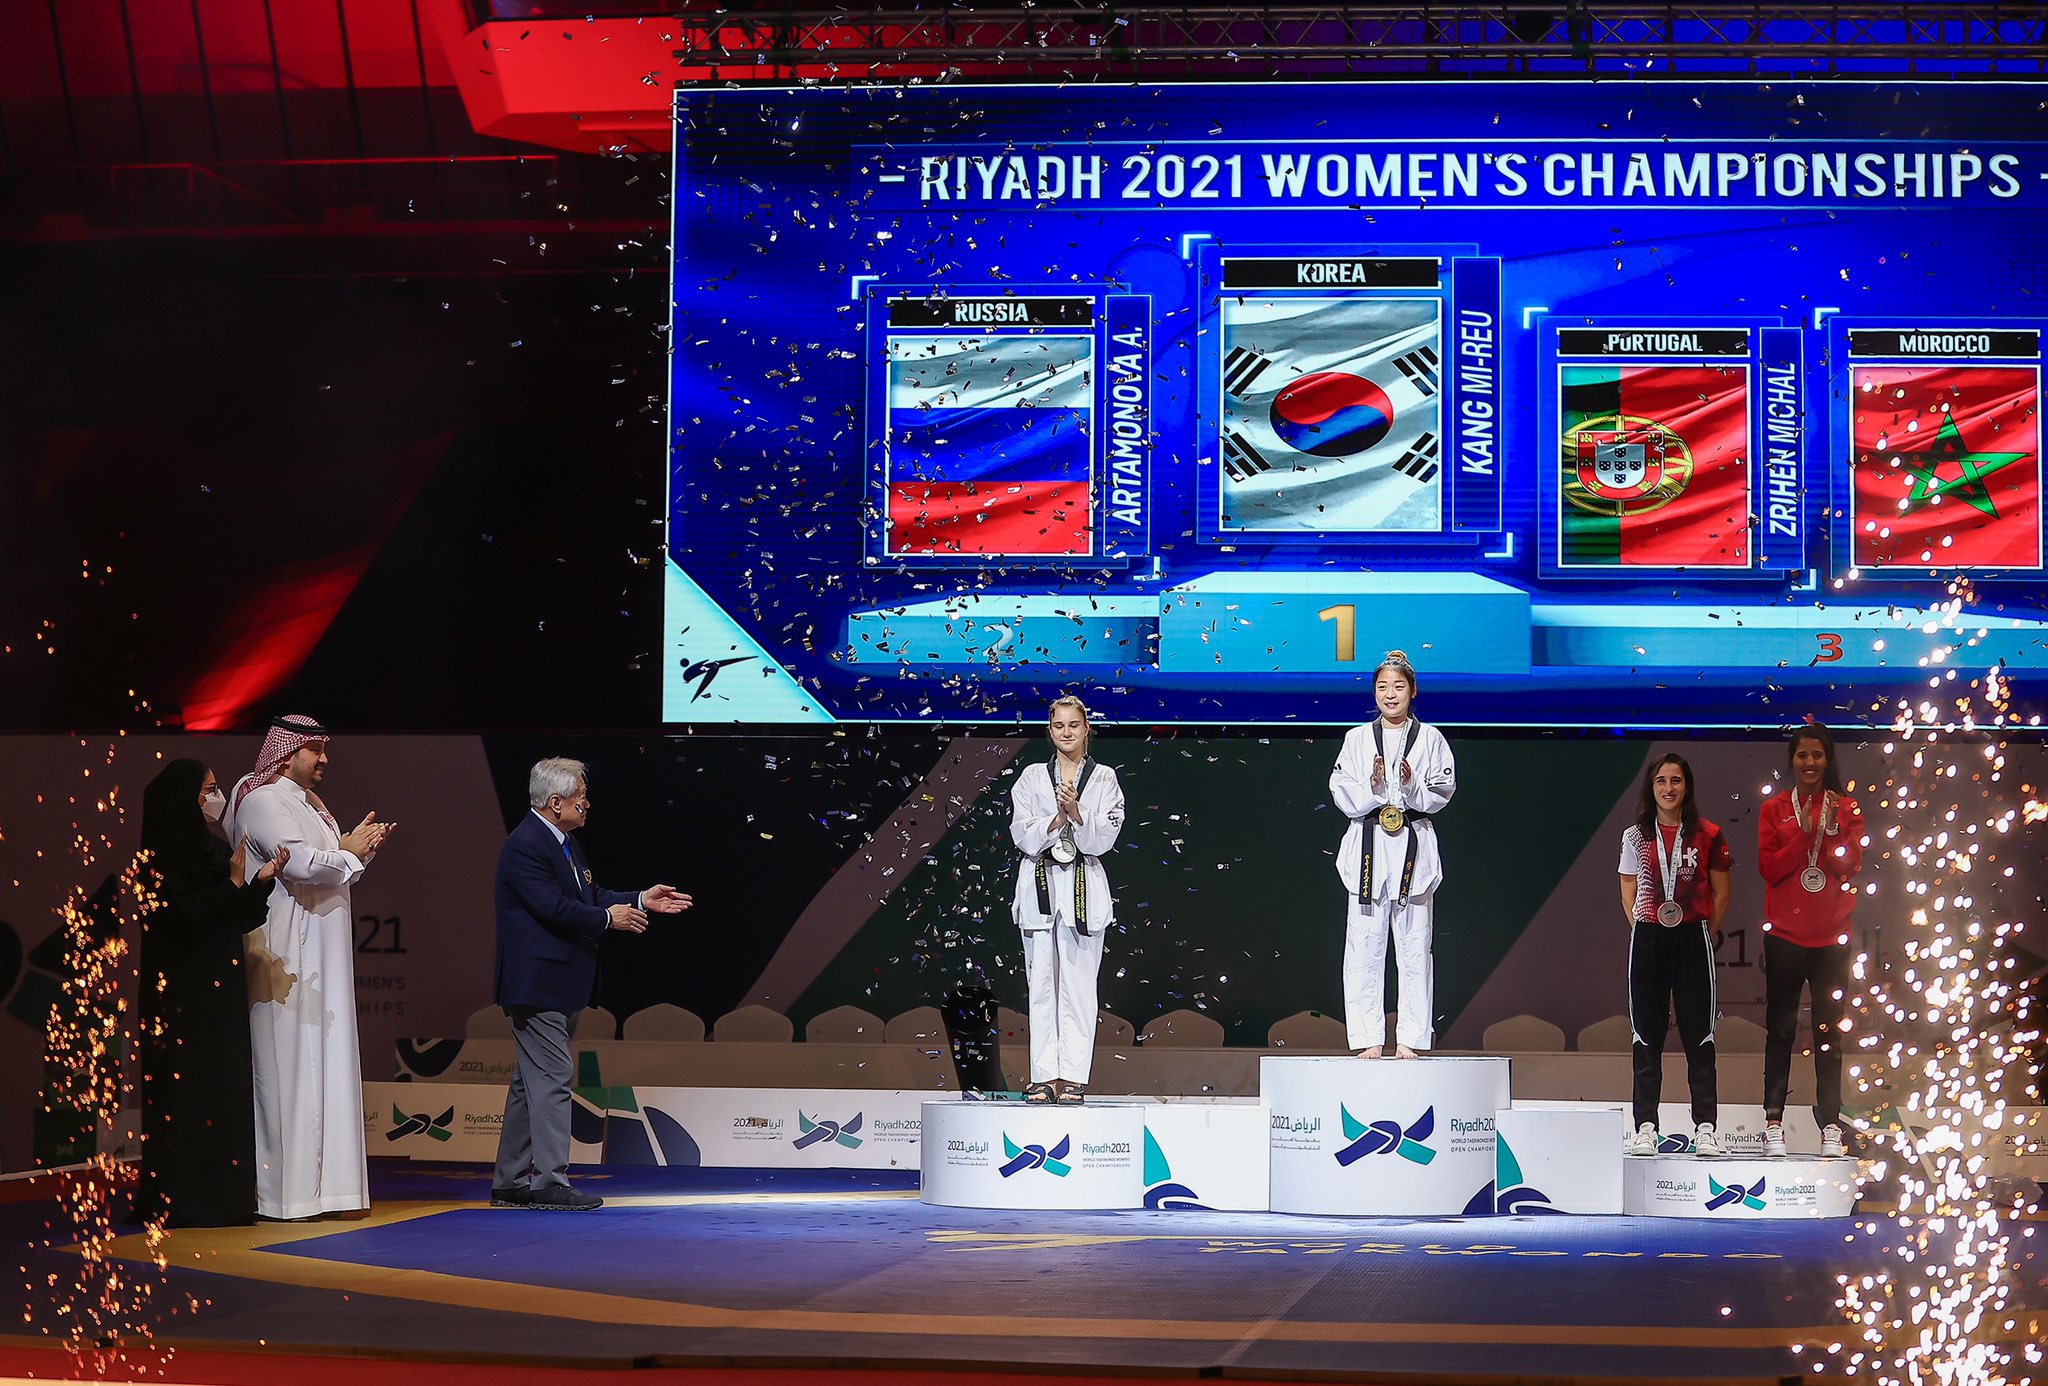 Soukaina Sahib sauve la participation marocaine avec sa médaille bronze.